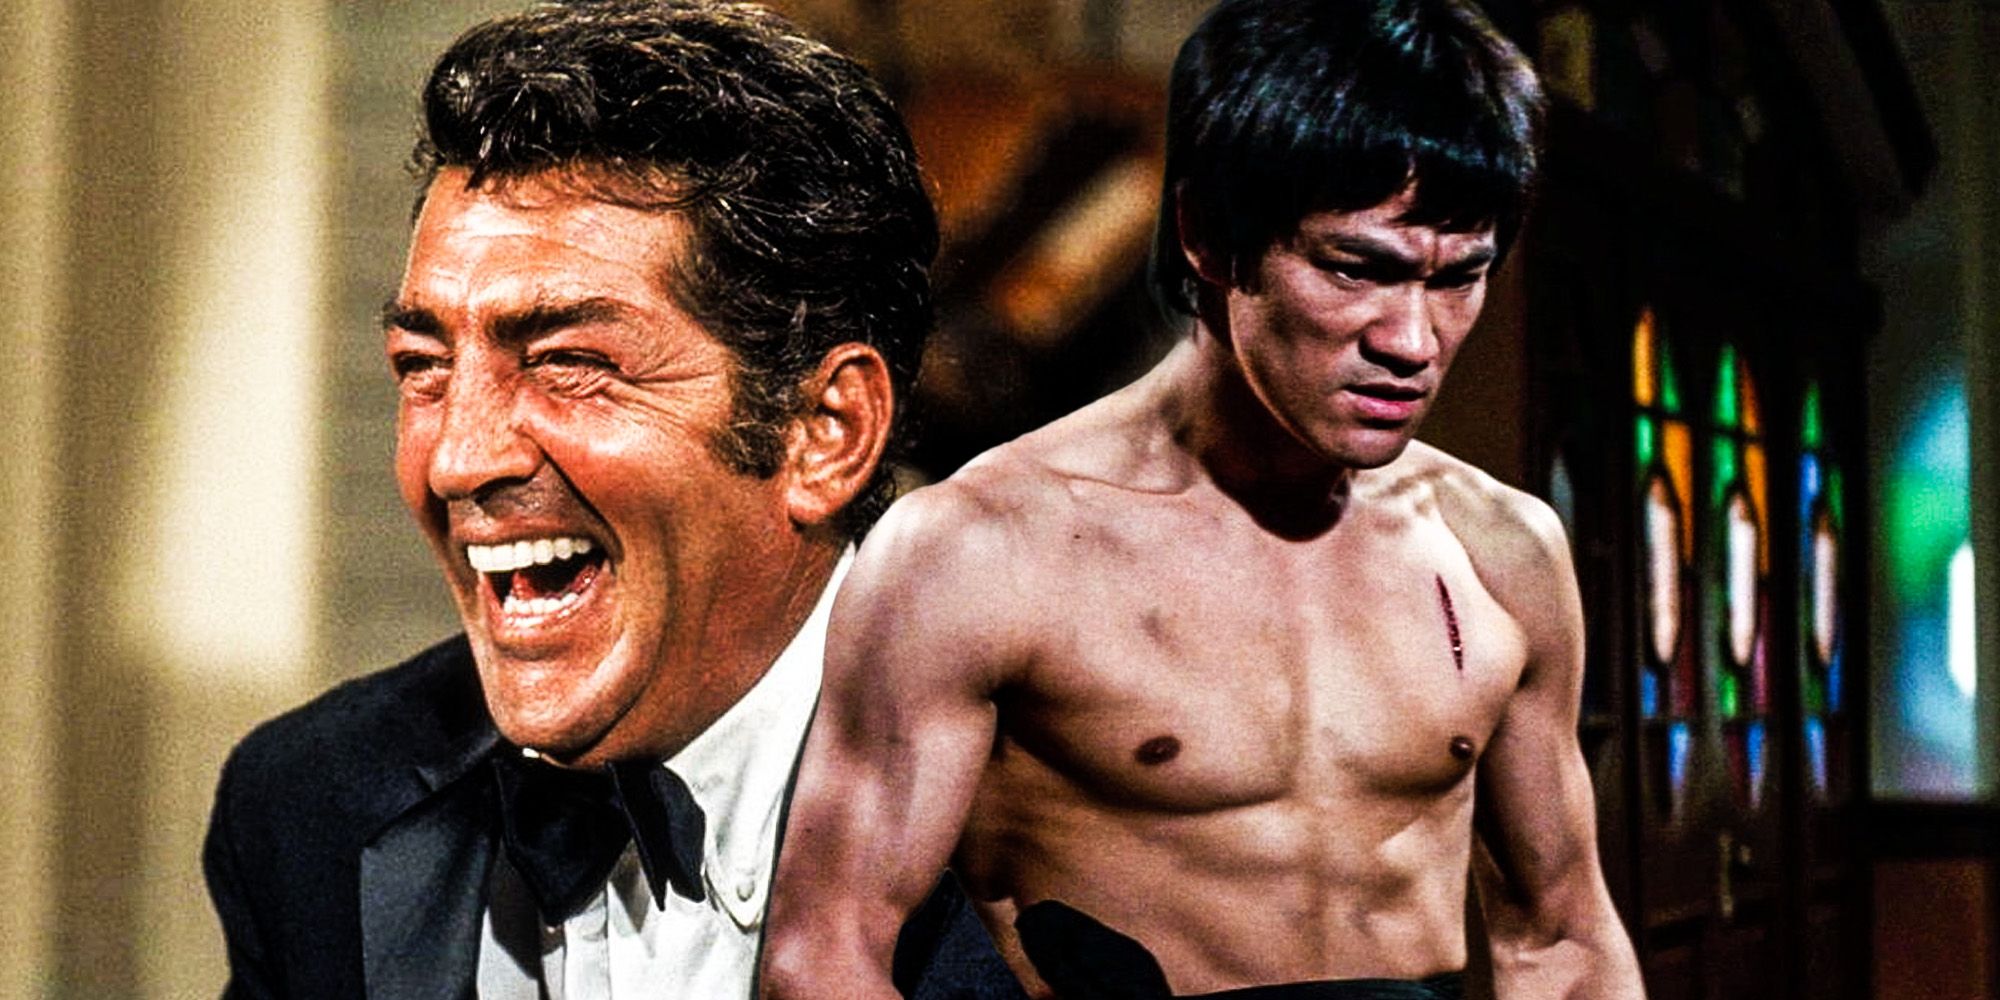 Bruce Lee tried to teach Dean Martin Kung Fu